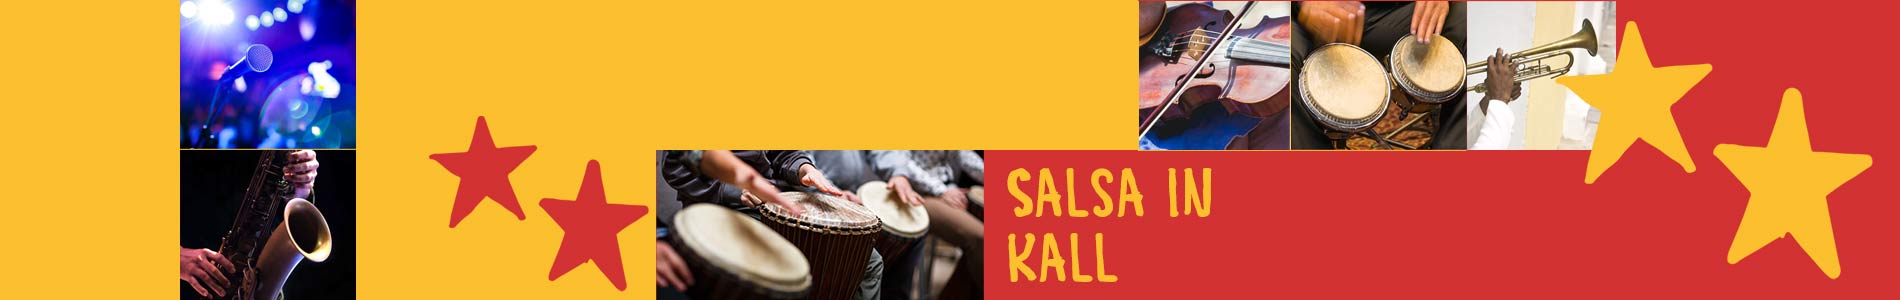 Salsa in Kall – Salsa lernen und tanzen, Tanzkurse, Partys, Veranstaltungen